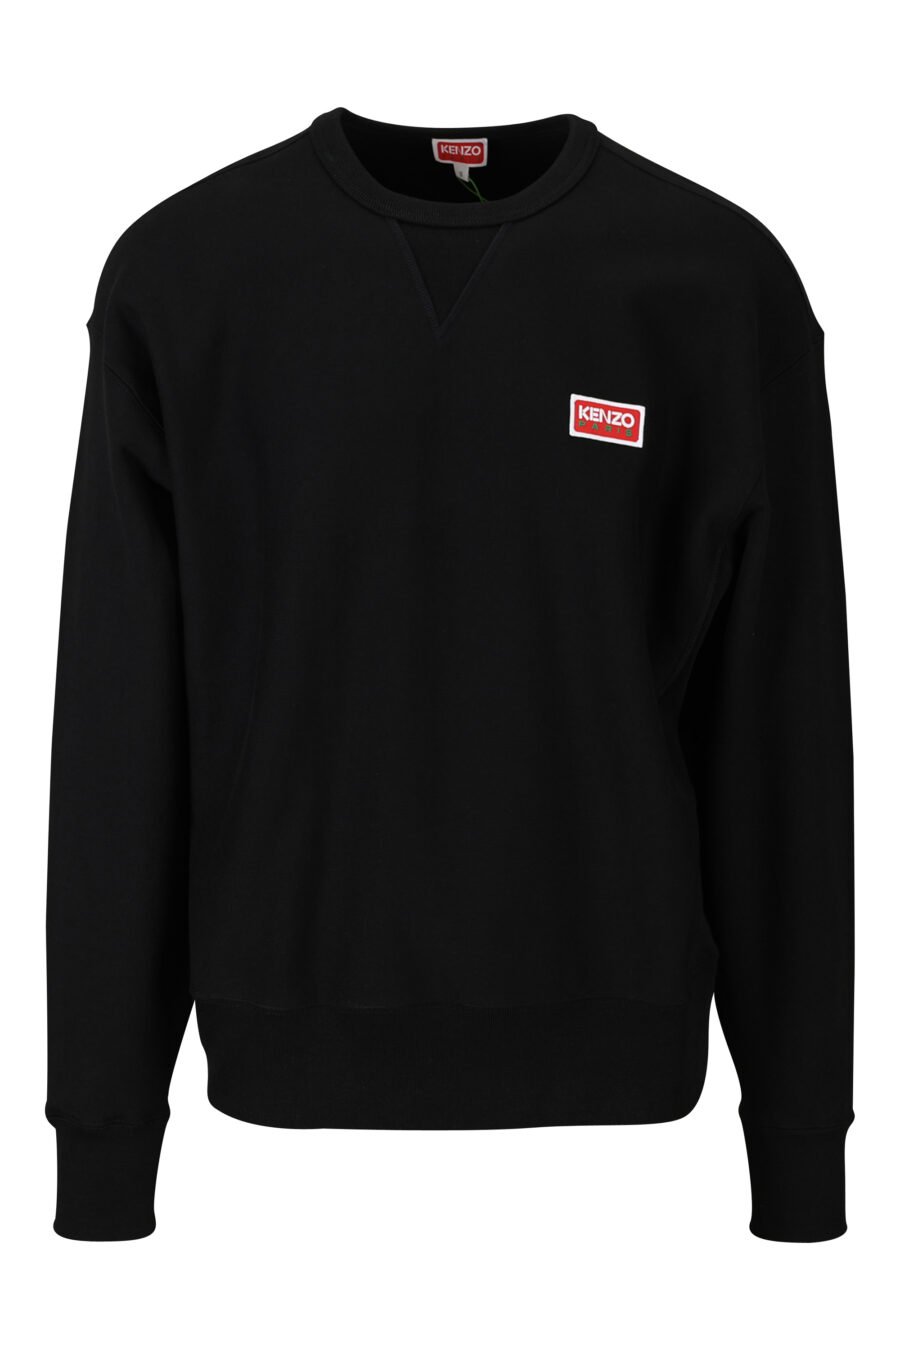 Schwarzes Sweatshirt in Übergröße mit Mini-Logo "kenzo paris" - 3612230537675